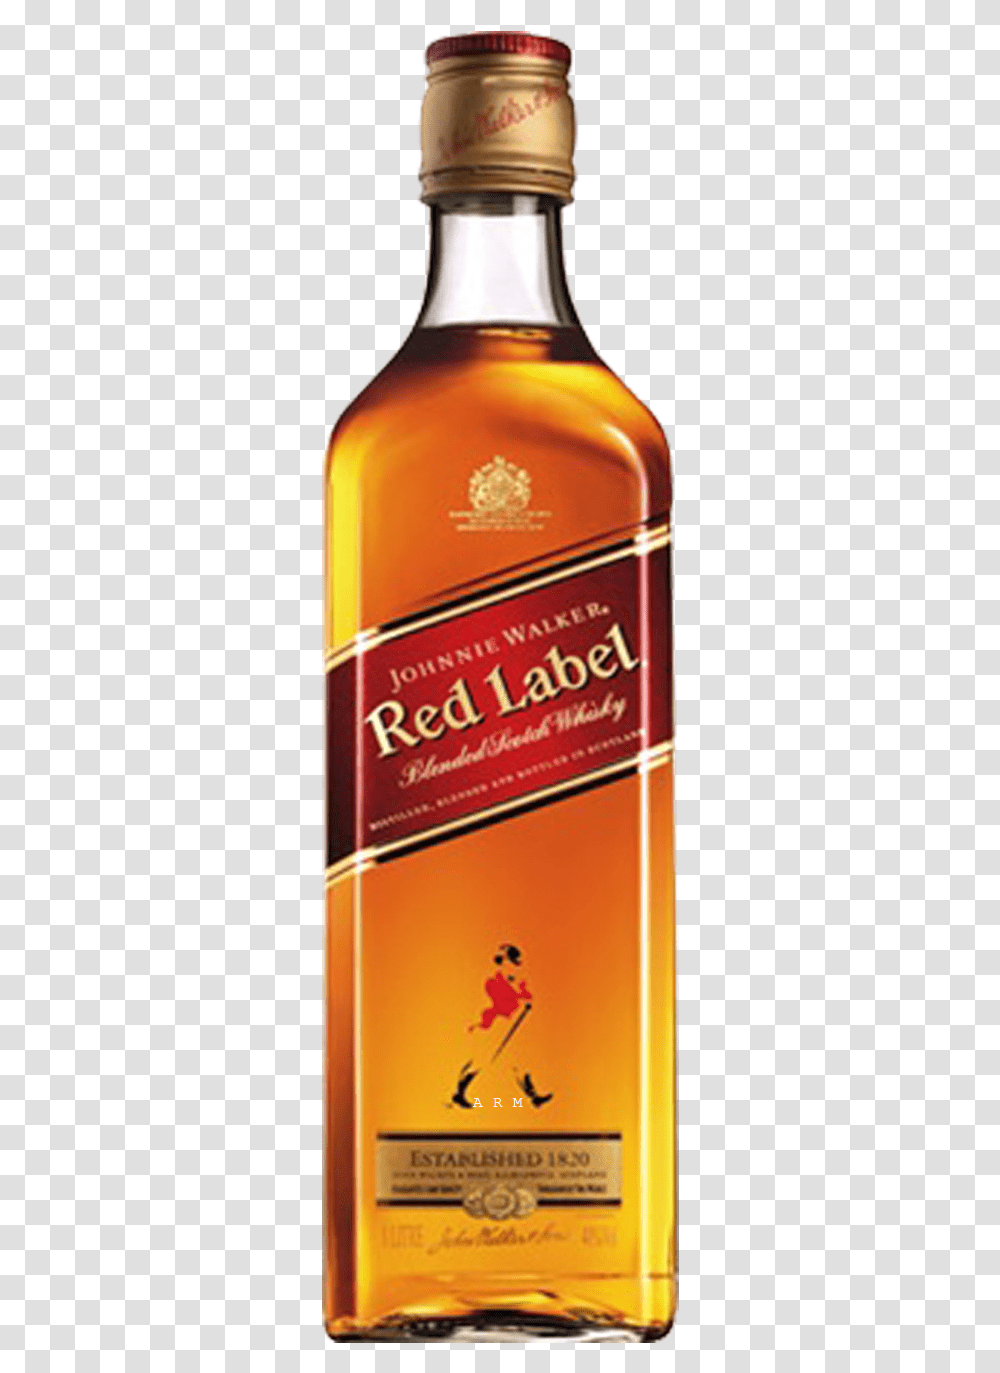 Johnnie Walker Red Label 1 L, Liquor, Alcohol, Beverage, Drink Transparent Png